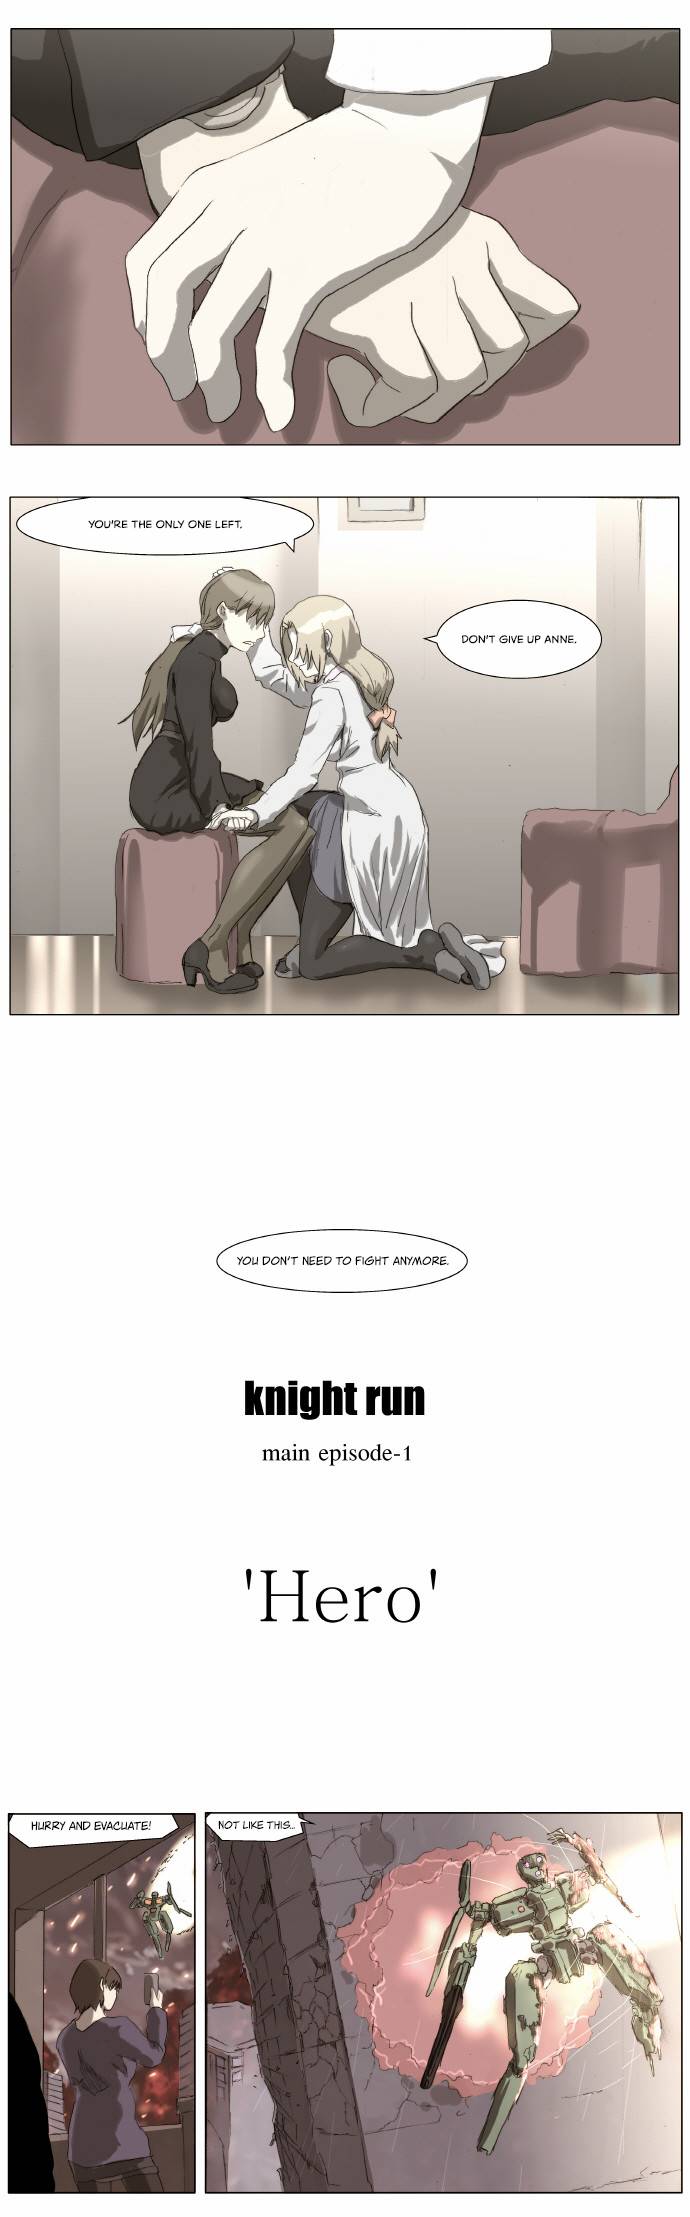 knight_run_171_4